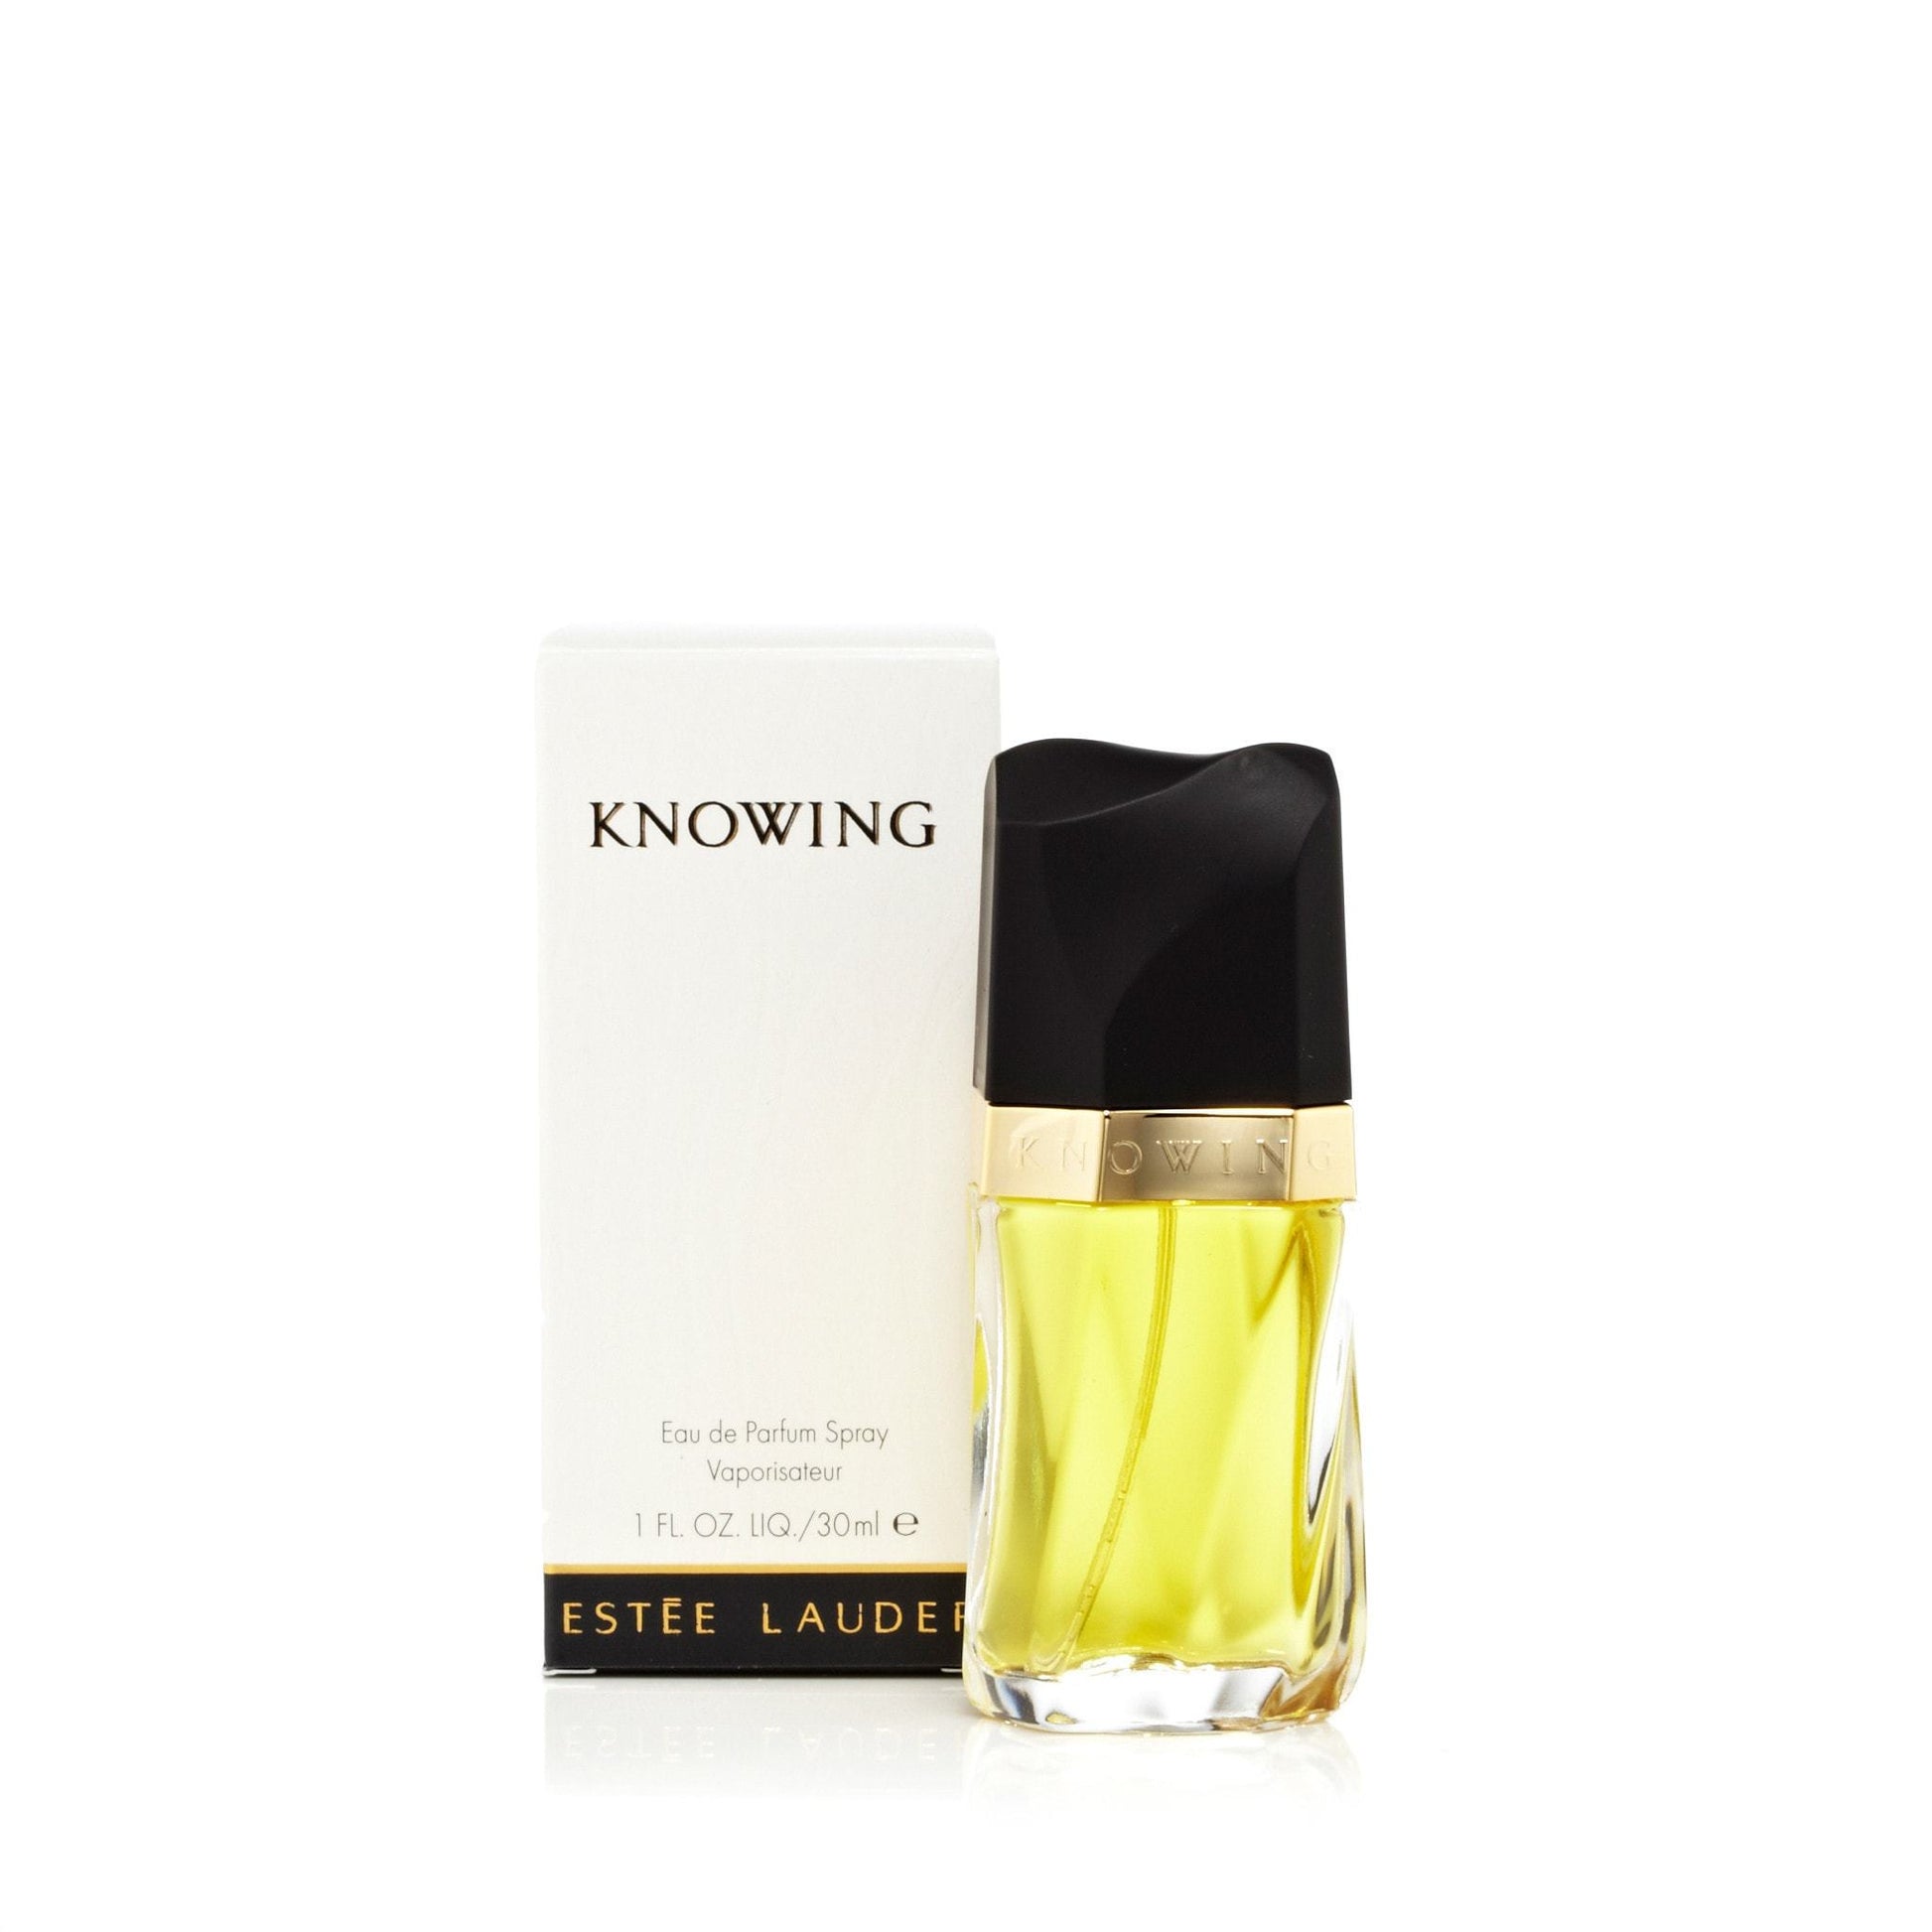 Knowing Eau de Parfum Spray for Women by Estee Lauder, Product image 1